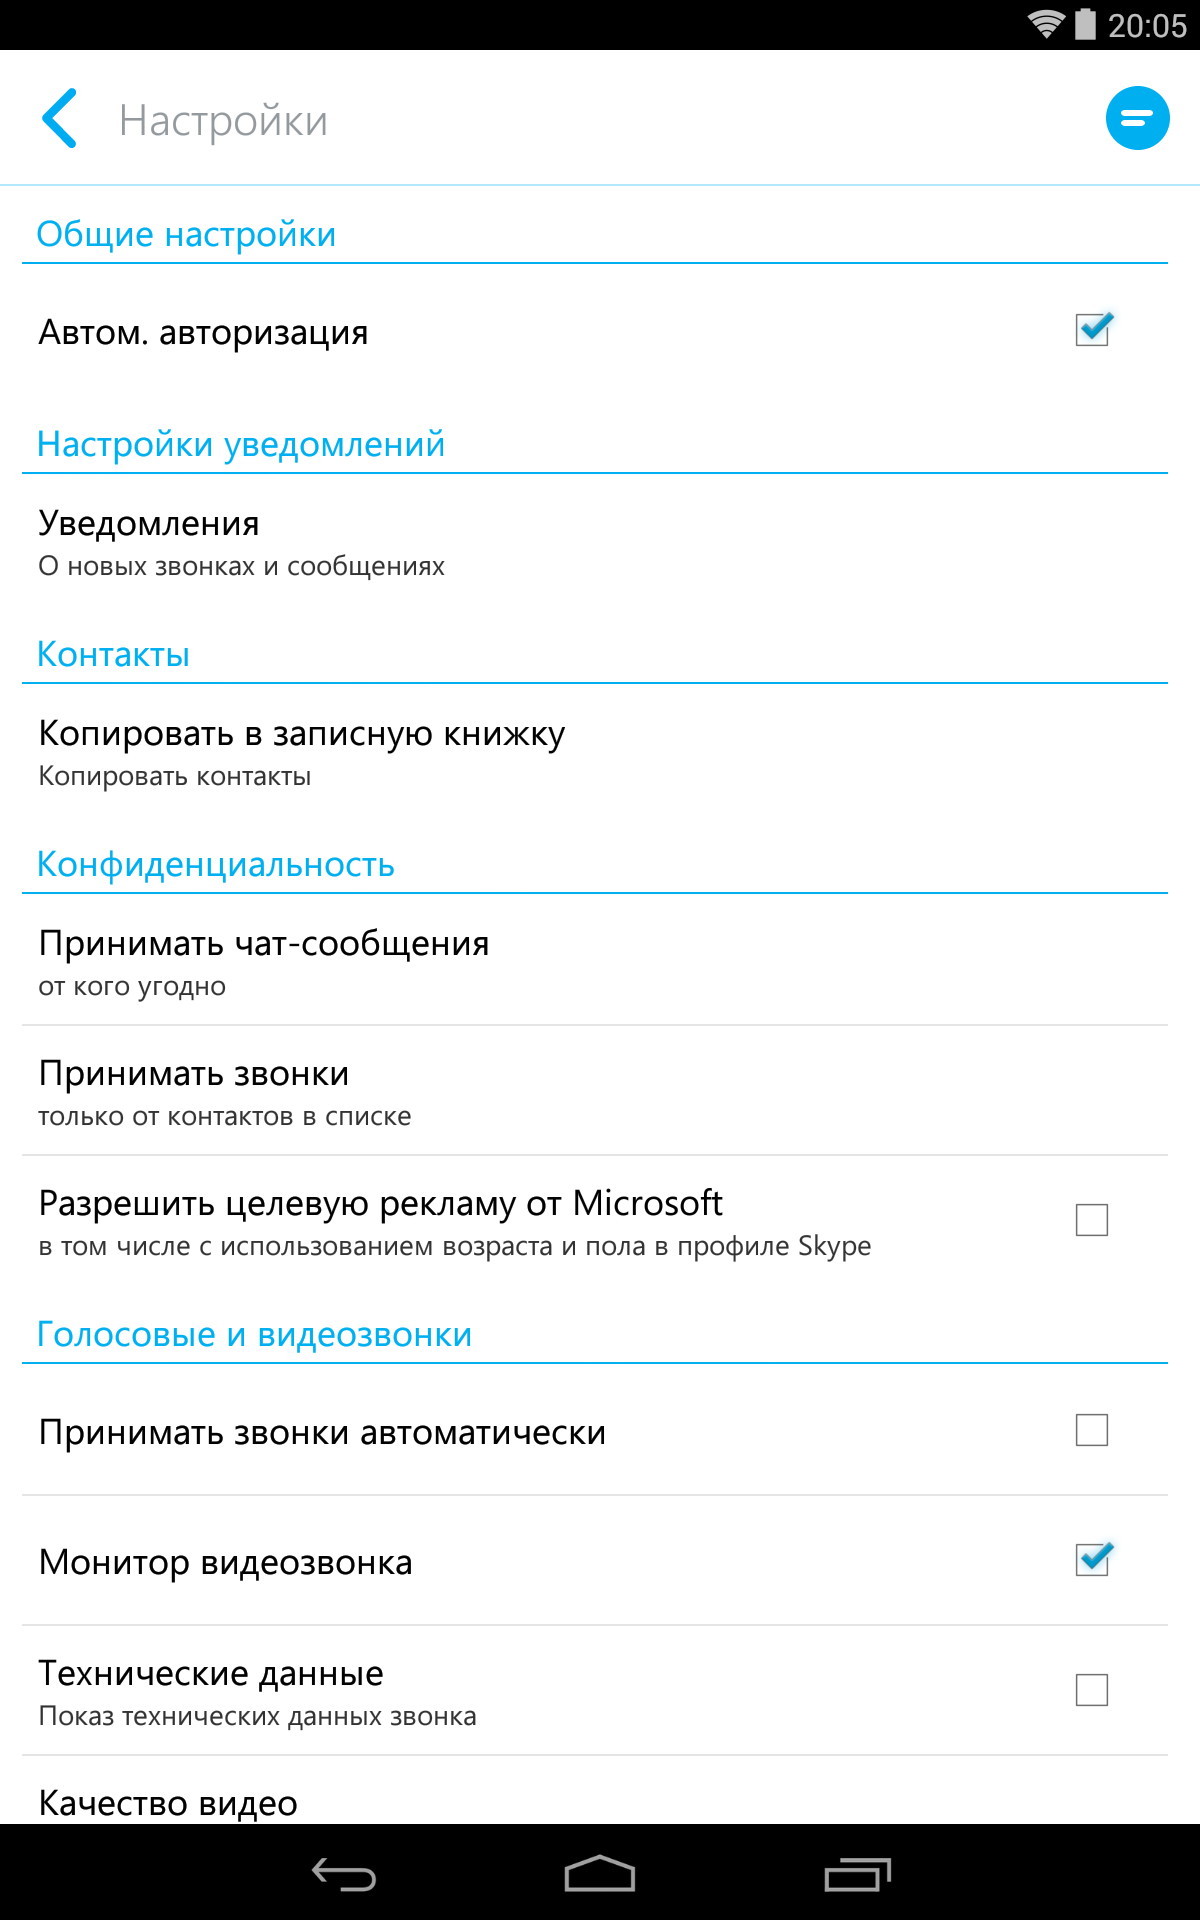 Скачать книги на андроид на русском языке